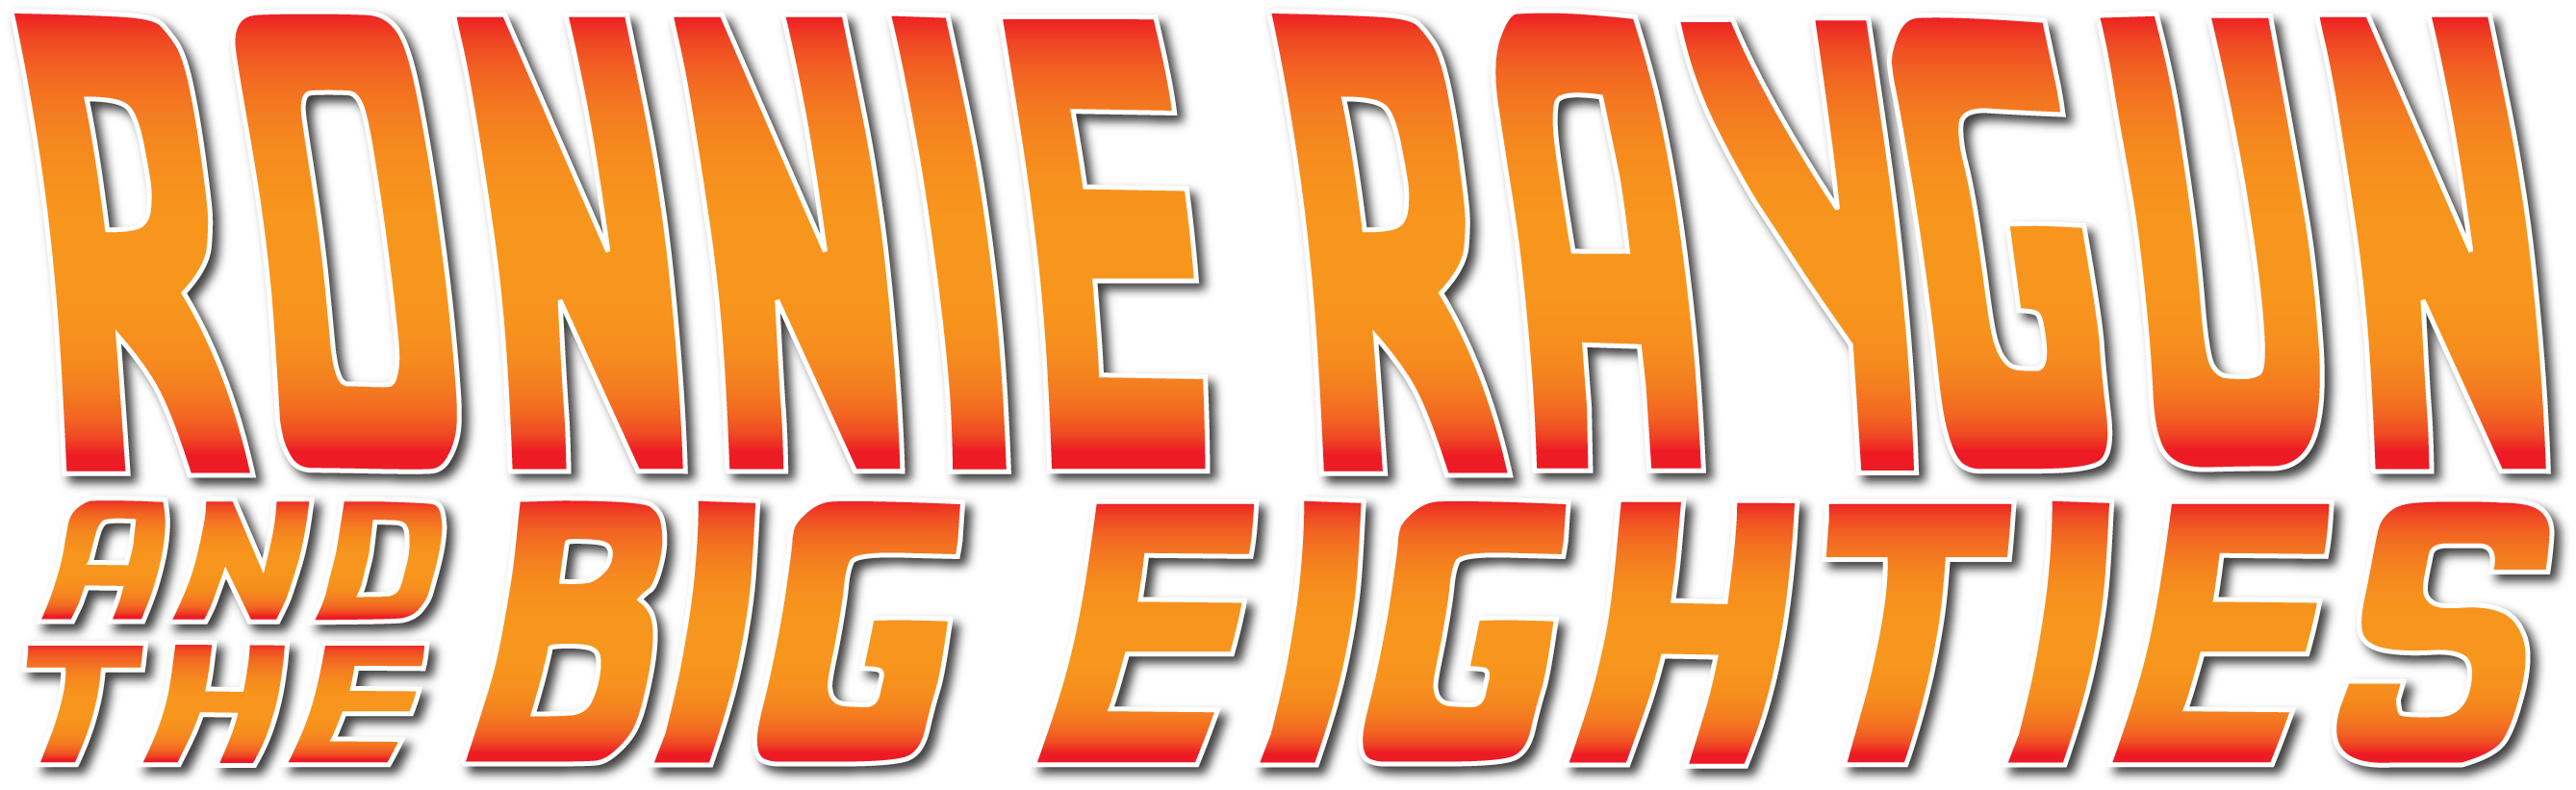 The Eighties are baaaaaack! - Ronnie Raygun and the Big Eighties